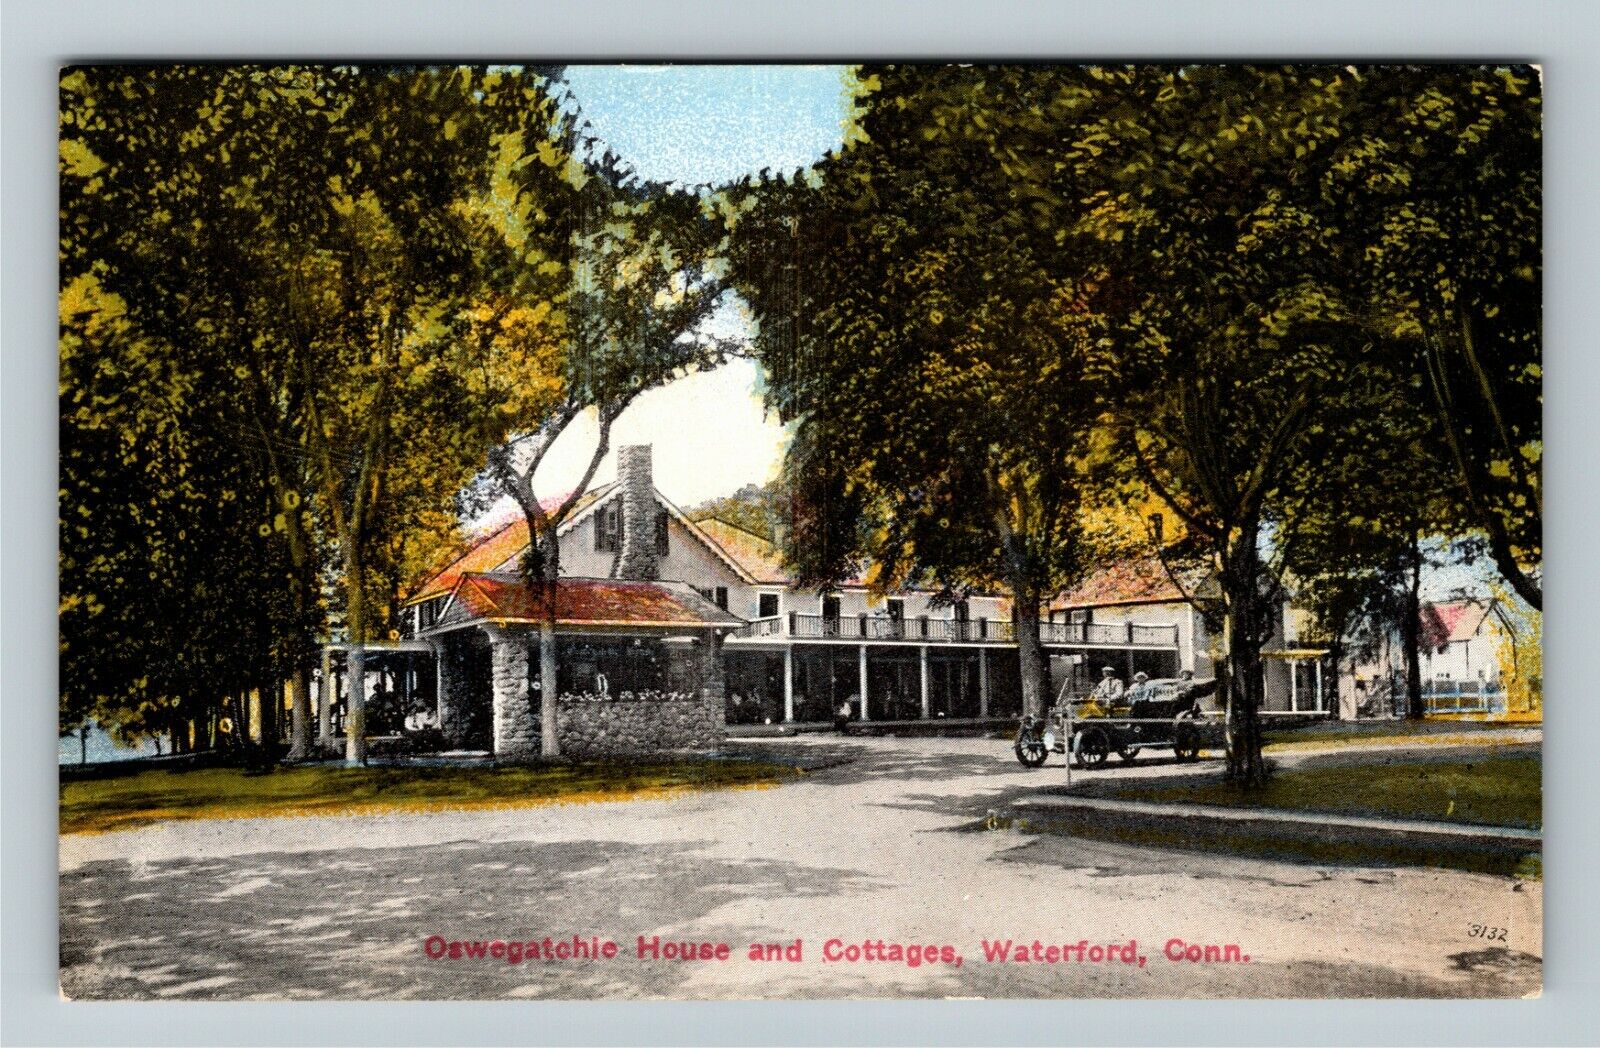 Waterford Connecticut, OSWEGATCHIE HOUSE & COTTAGES Vintage Souvenir Postcard